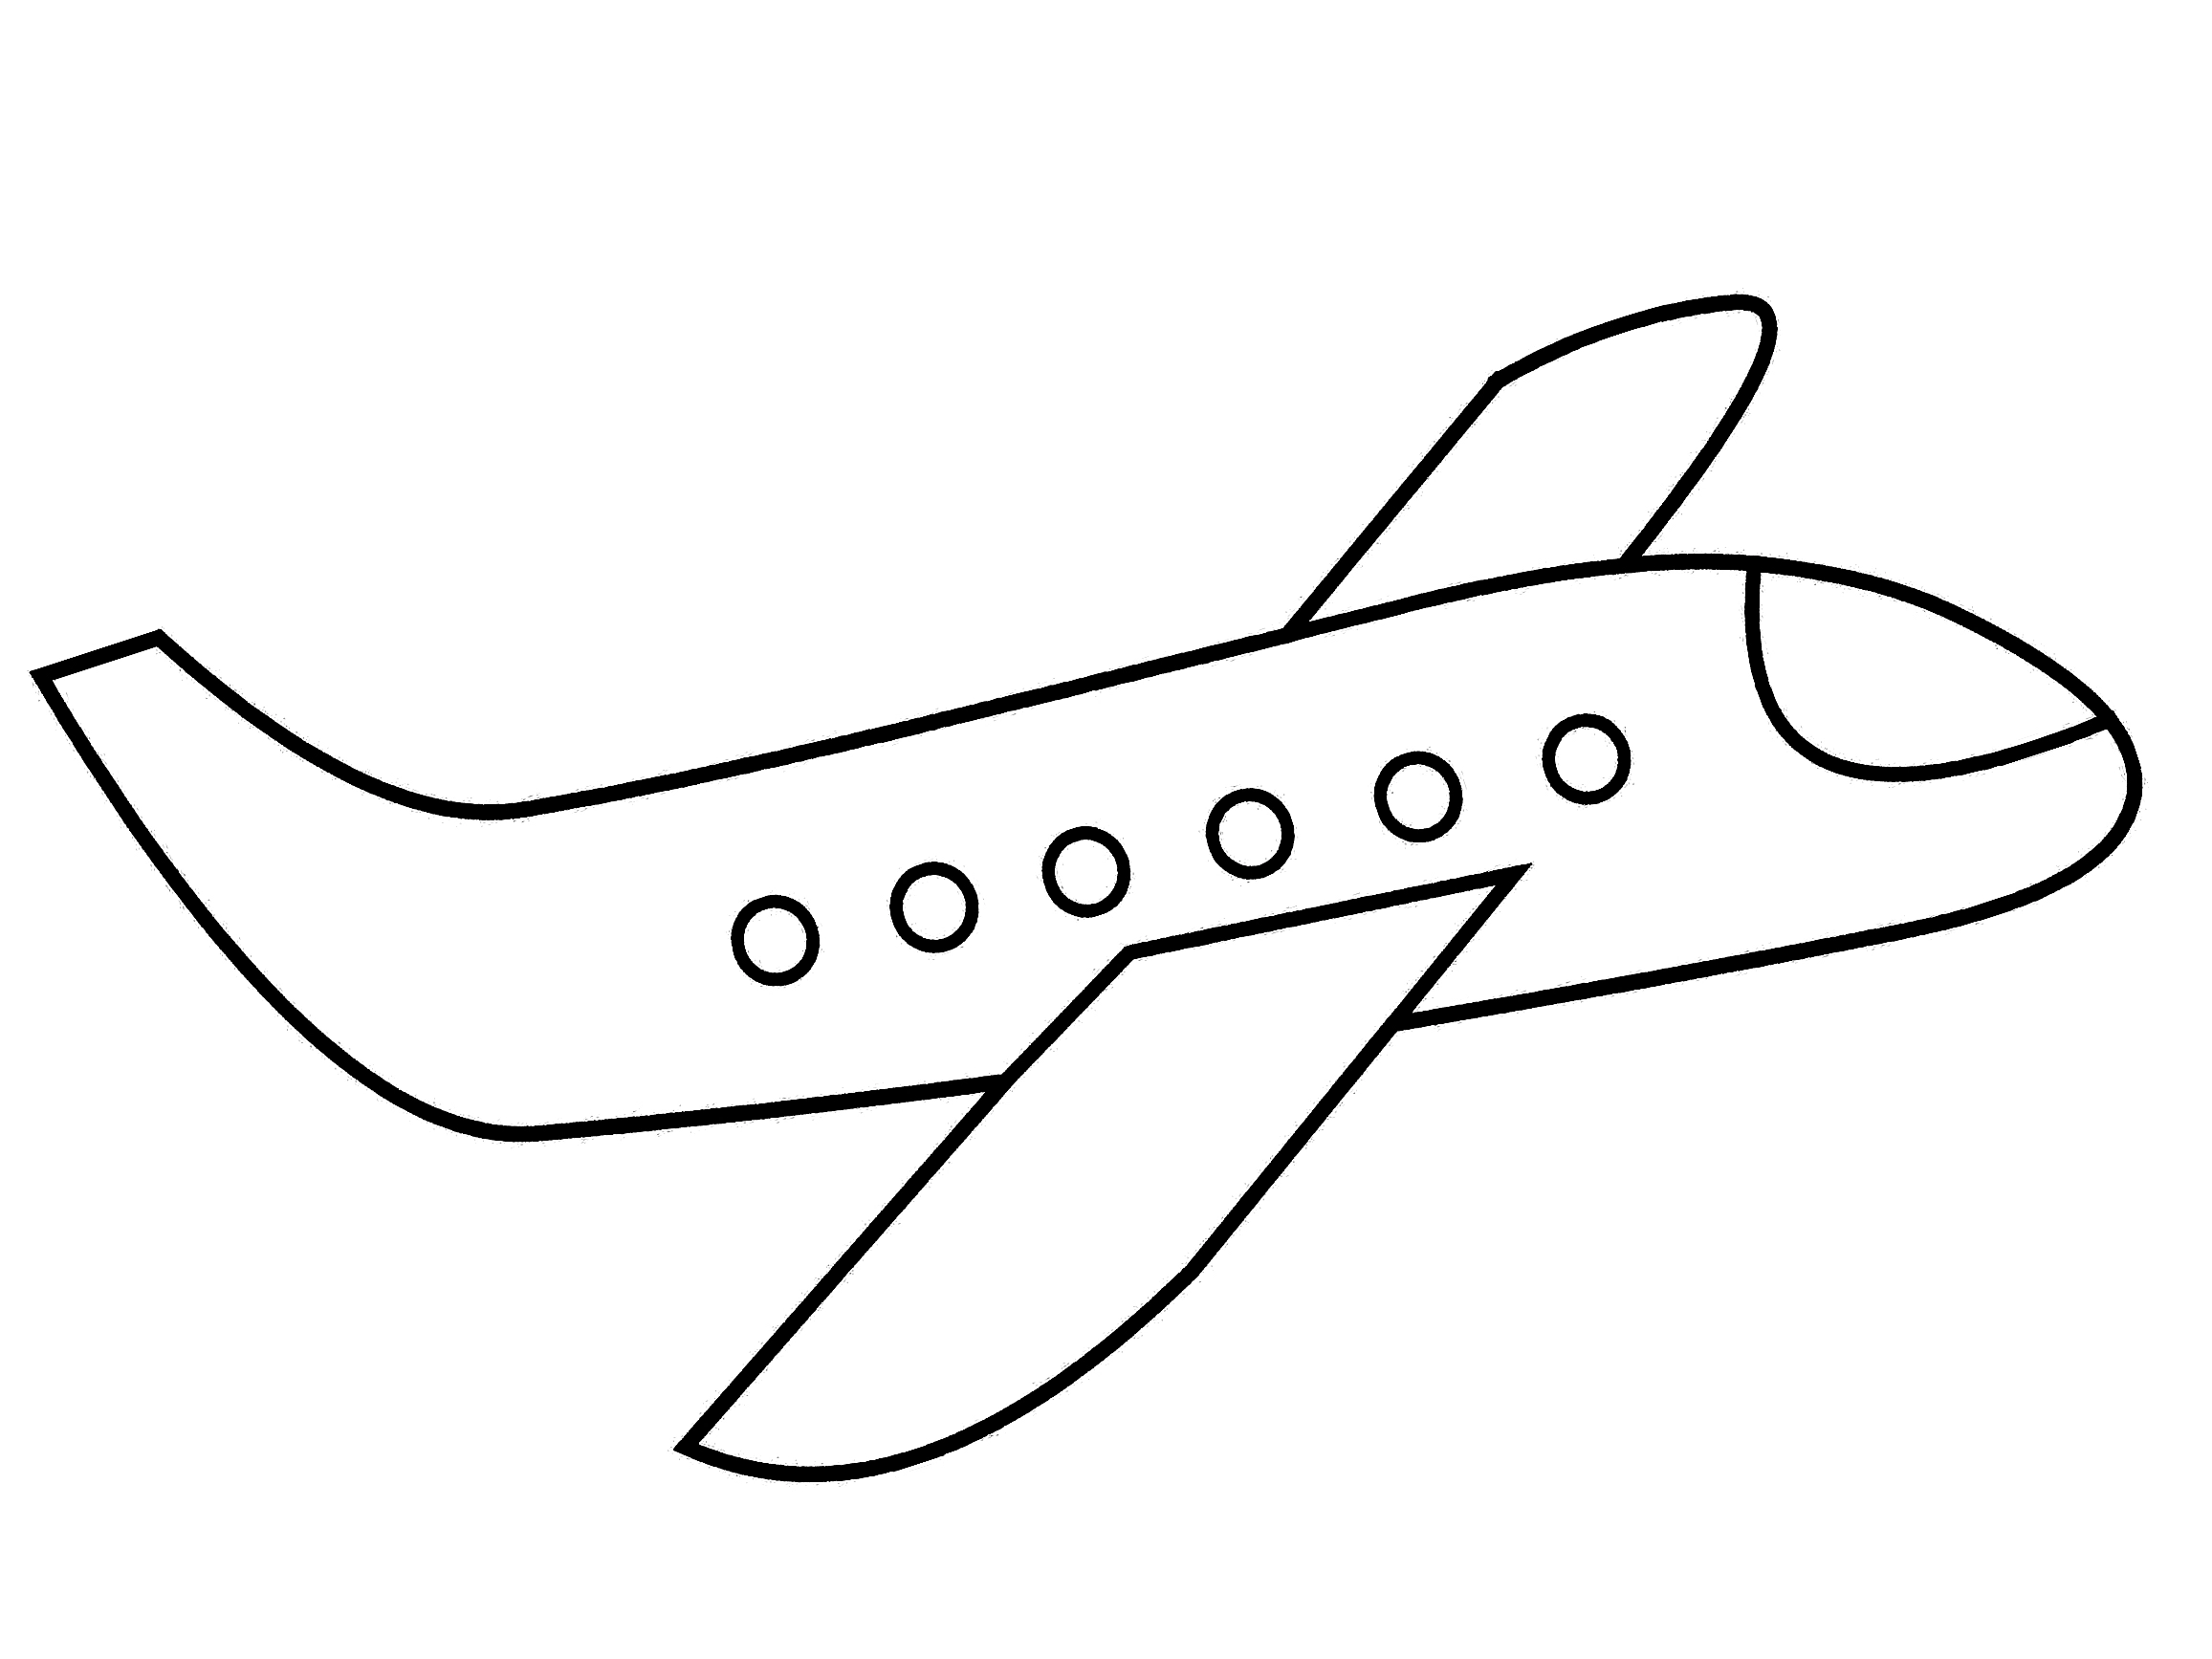 Flugzeug Zeichnen Einfach - KibrisPDR